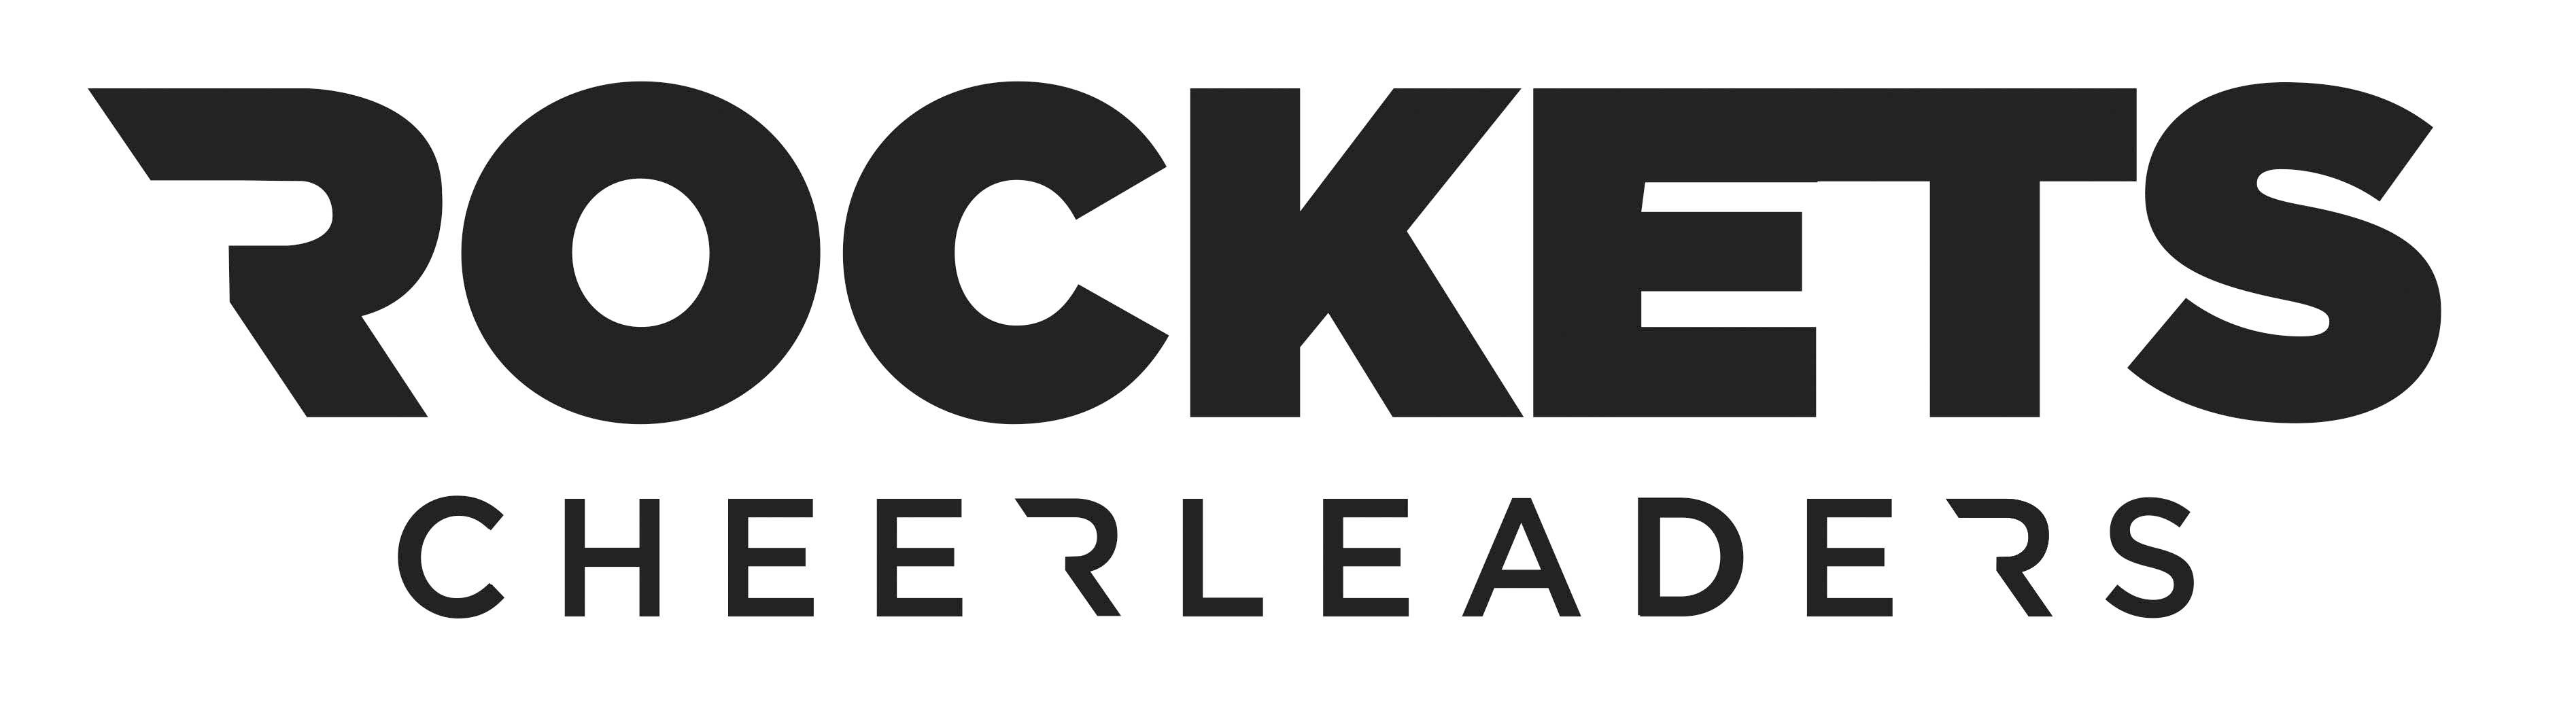 Rockets Cheerleaders logo